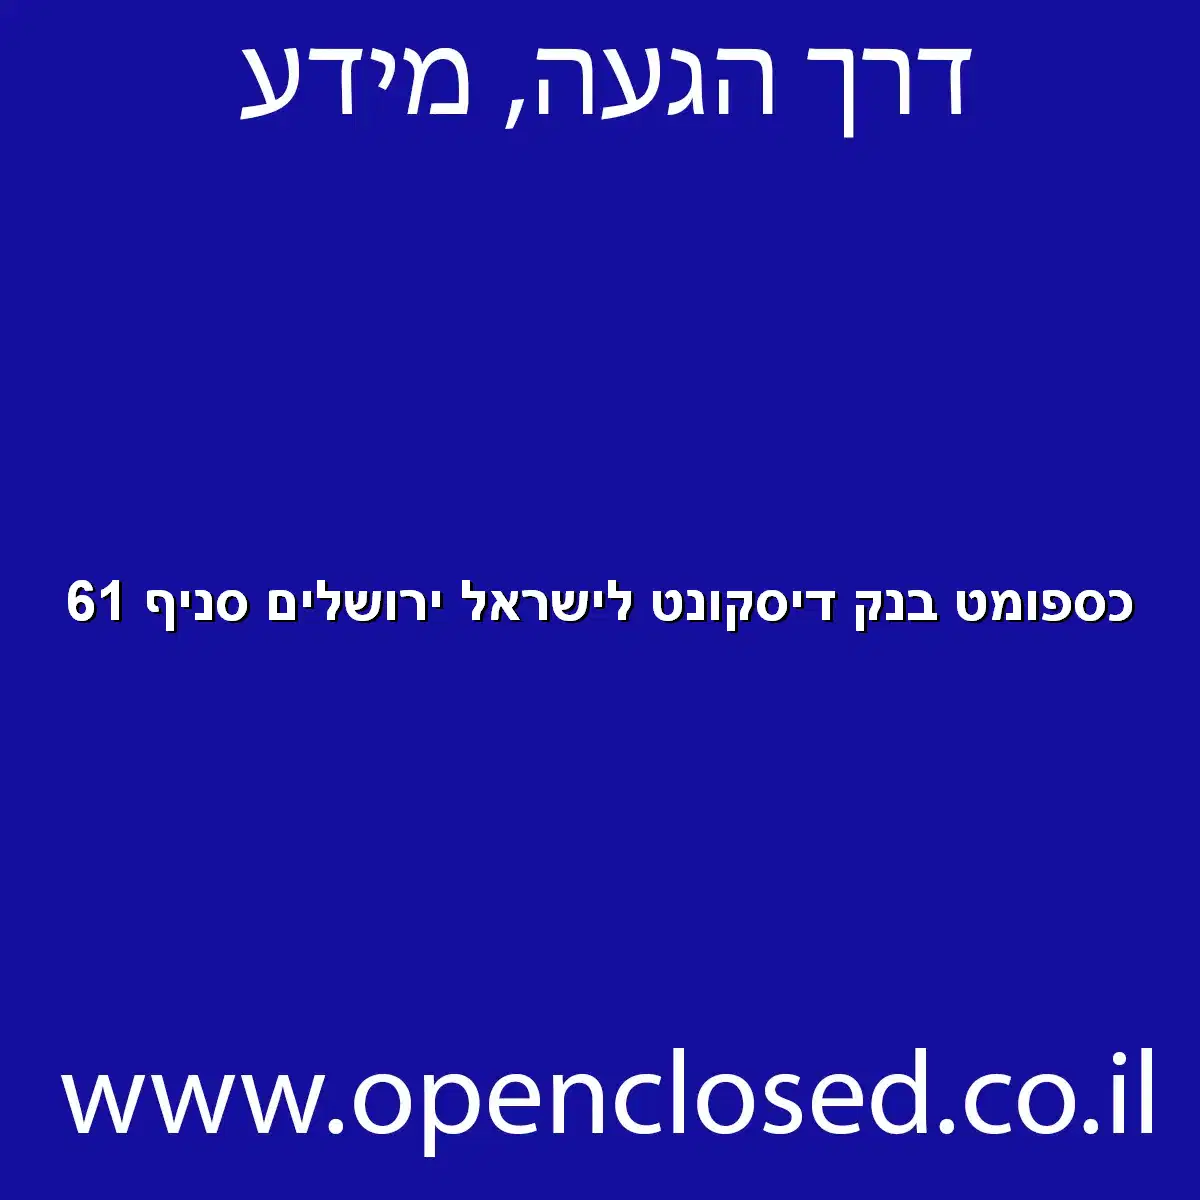 כספומט בנק דיסקונט לישראל ירושלים סניף 61